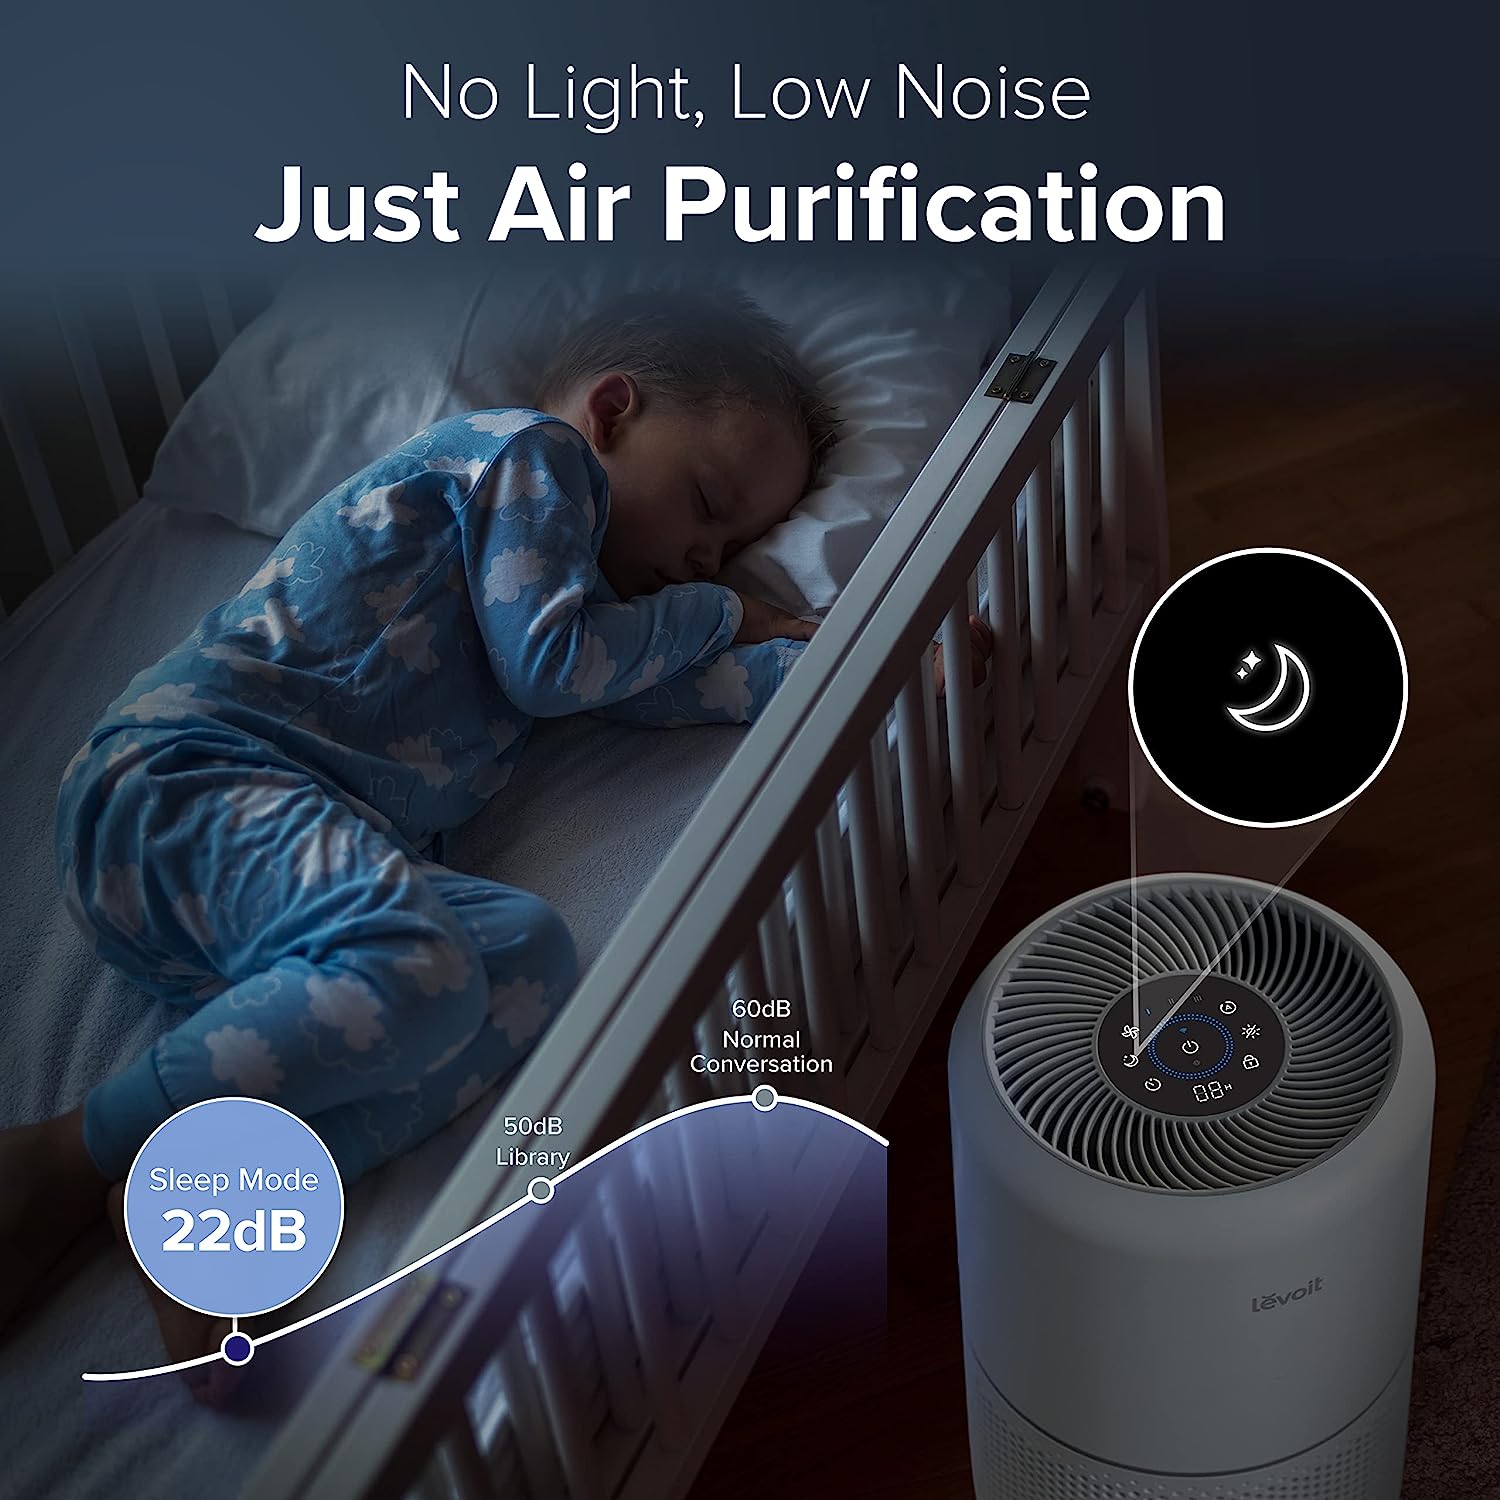 LEVOIT Core-300S | smart air purifier 